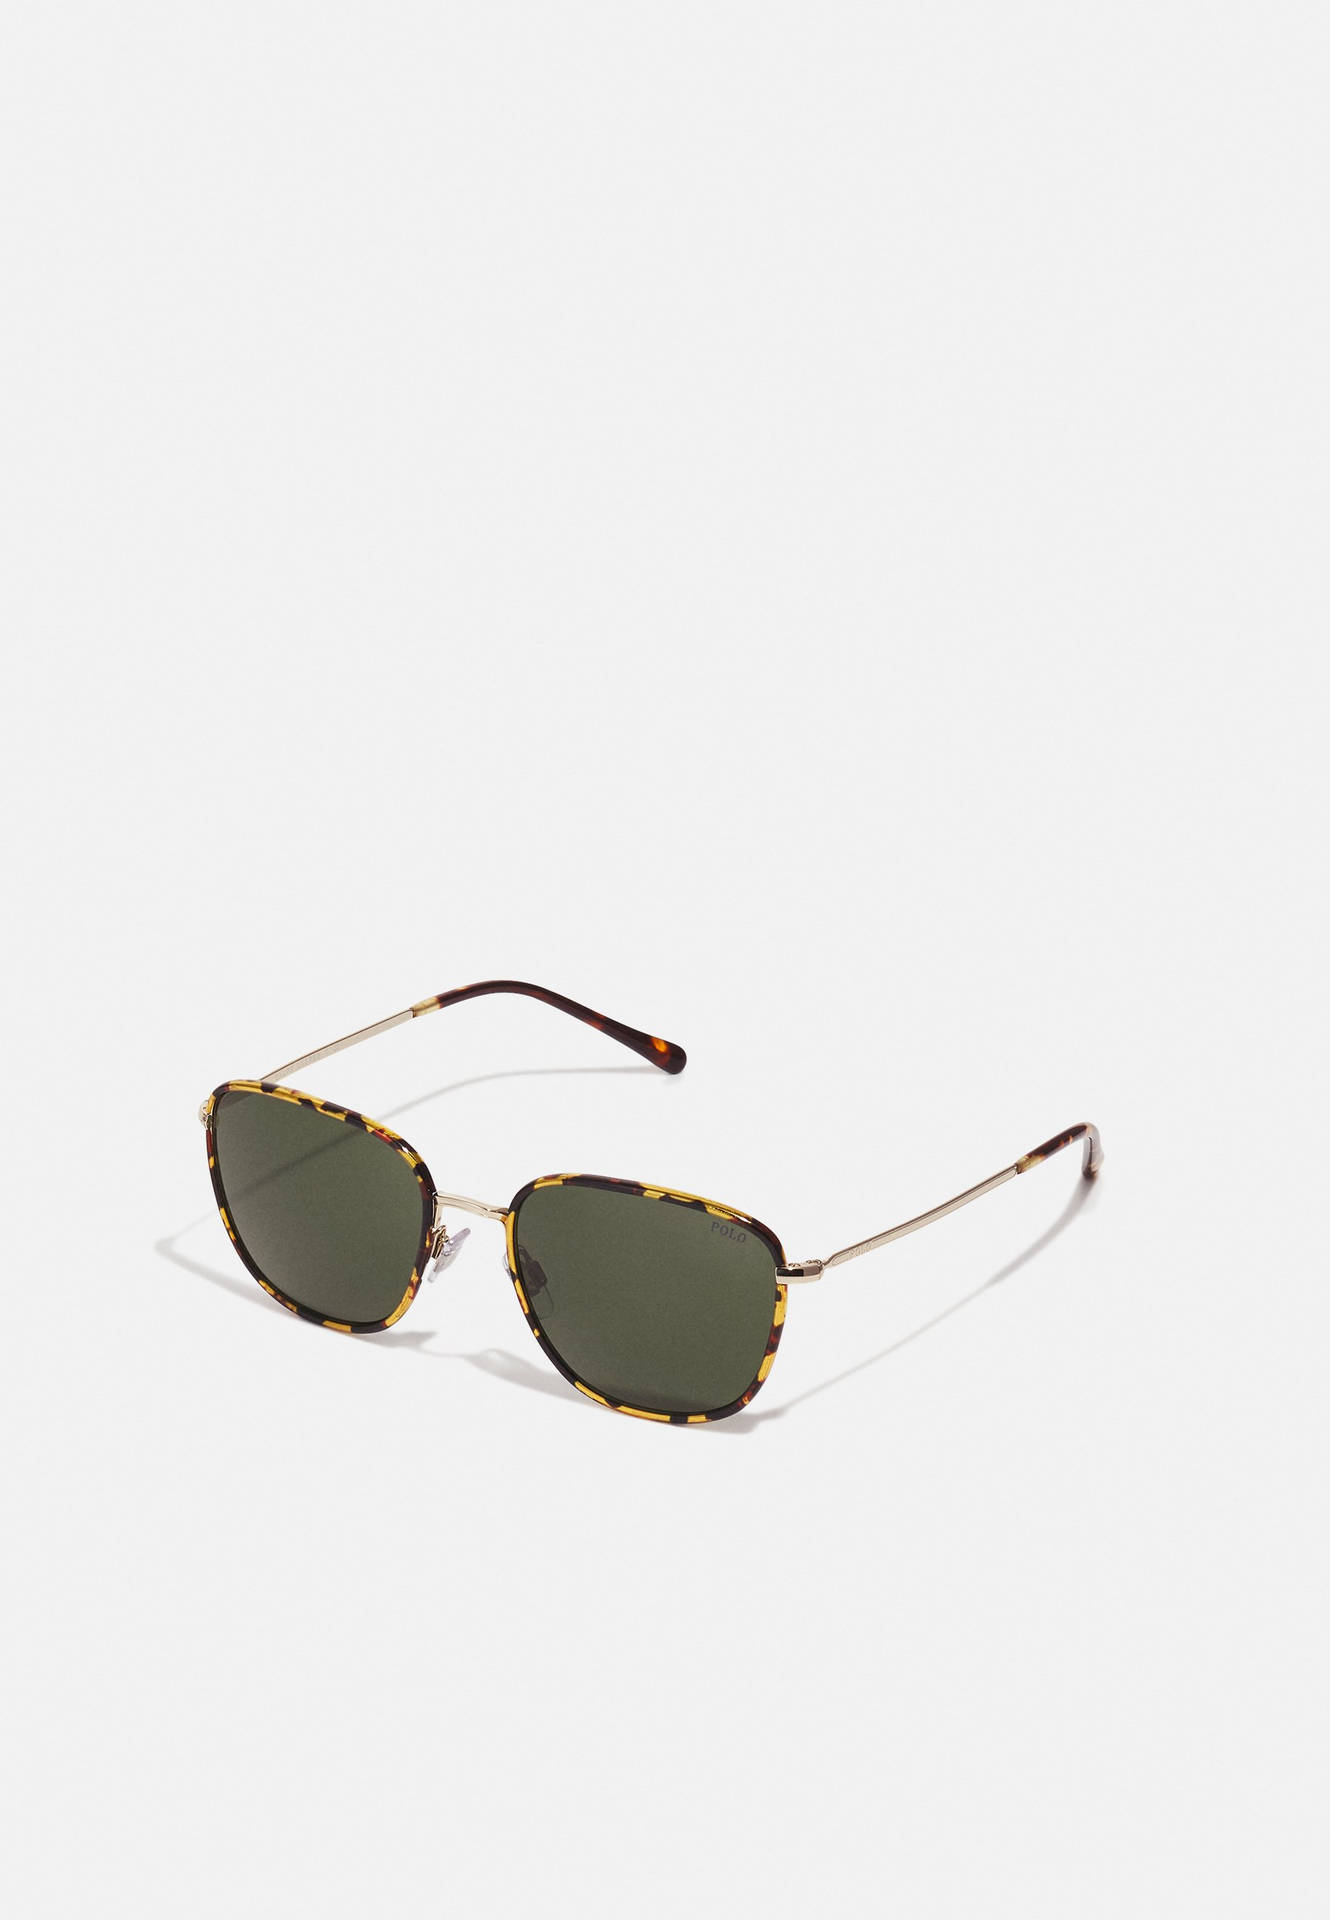 Polo Sunglasses Dark Lenses Wallpaper